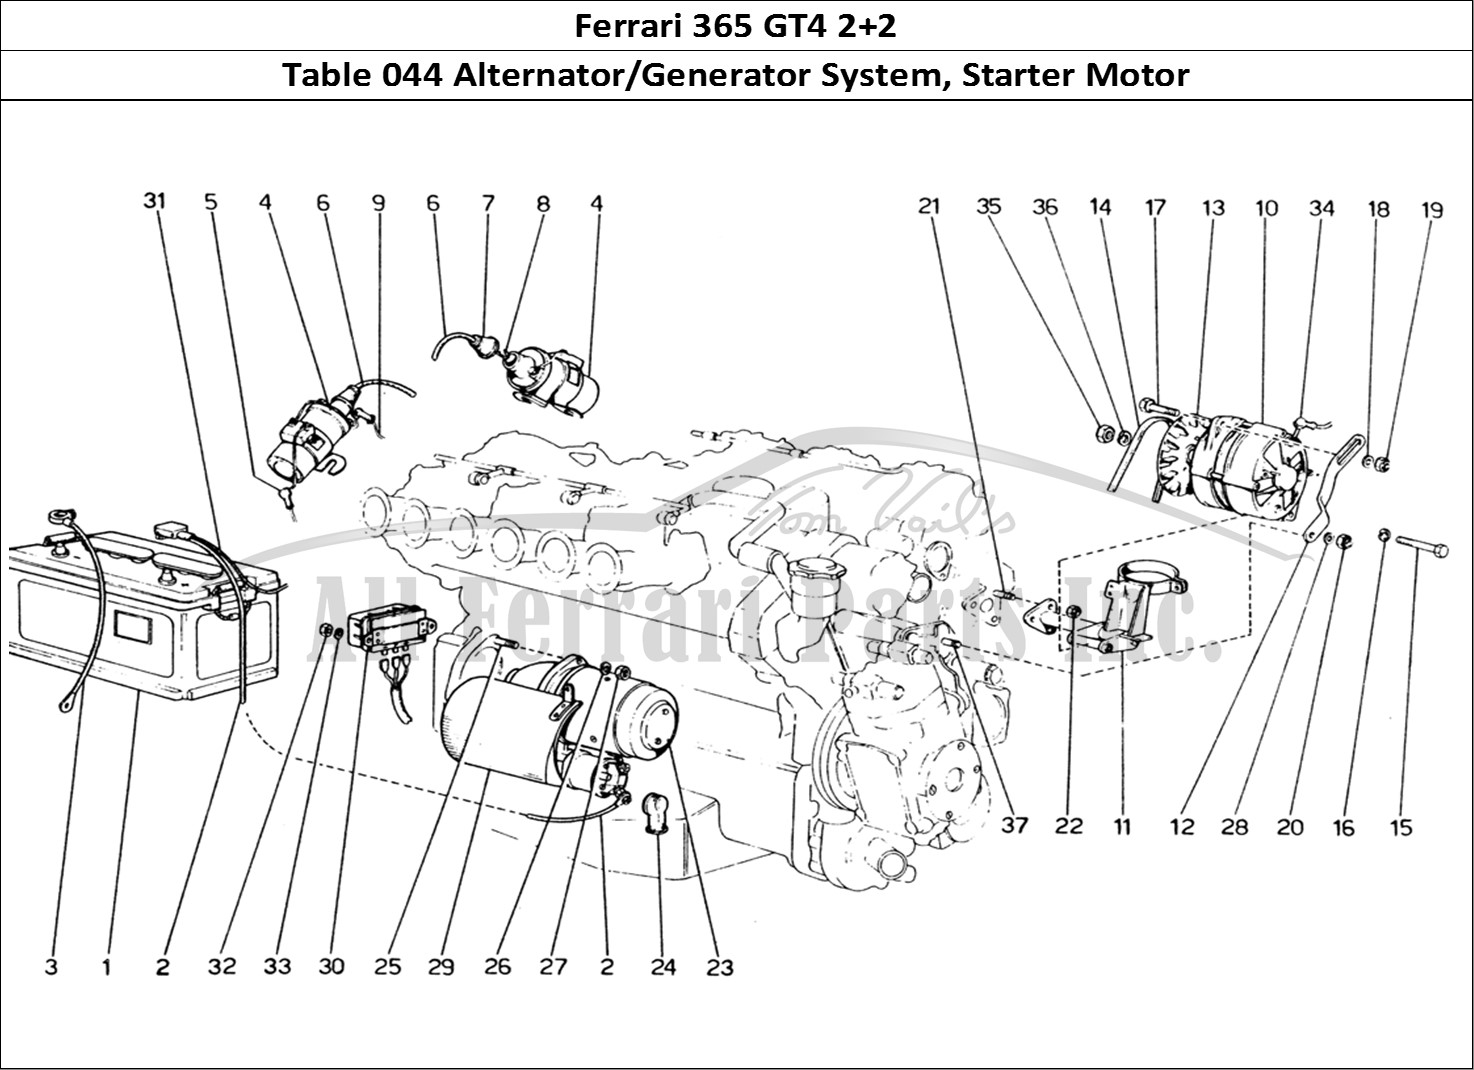 Ferrari Parts Ferrari 365 GT4 2+2 (1973) Page 044 Current Generating System